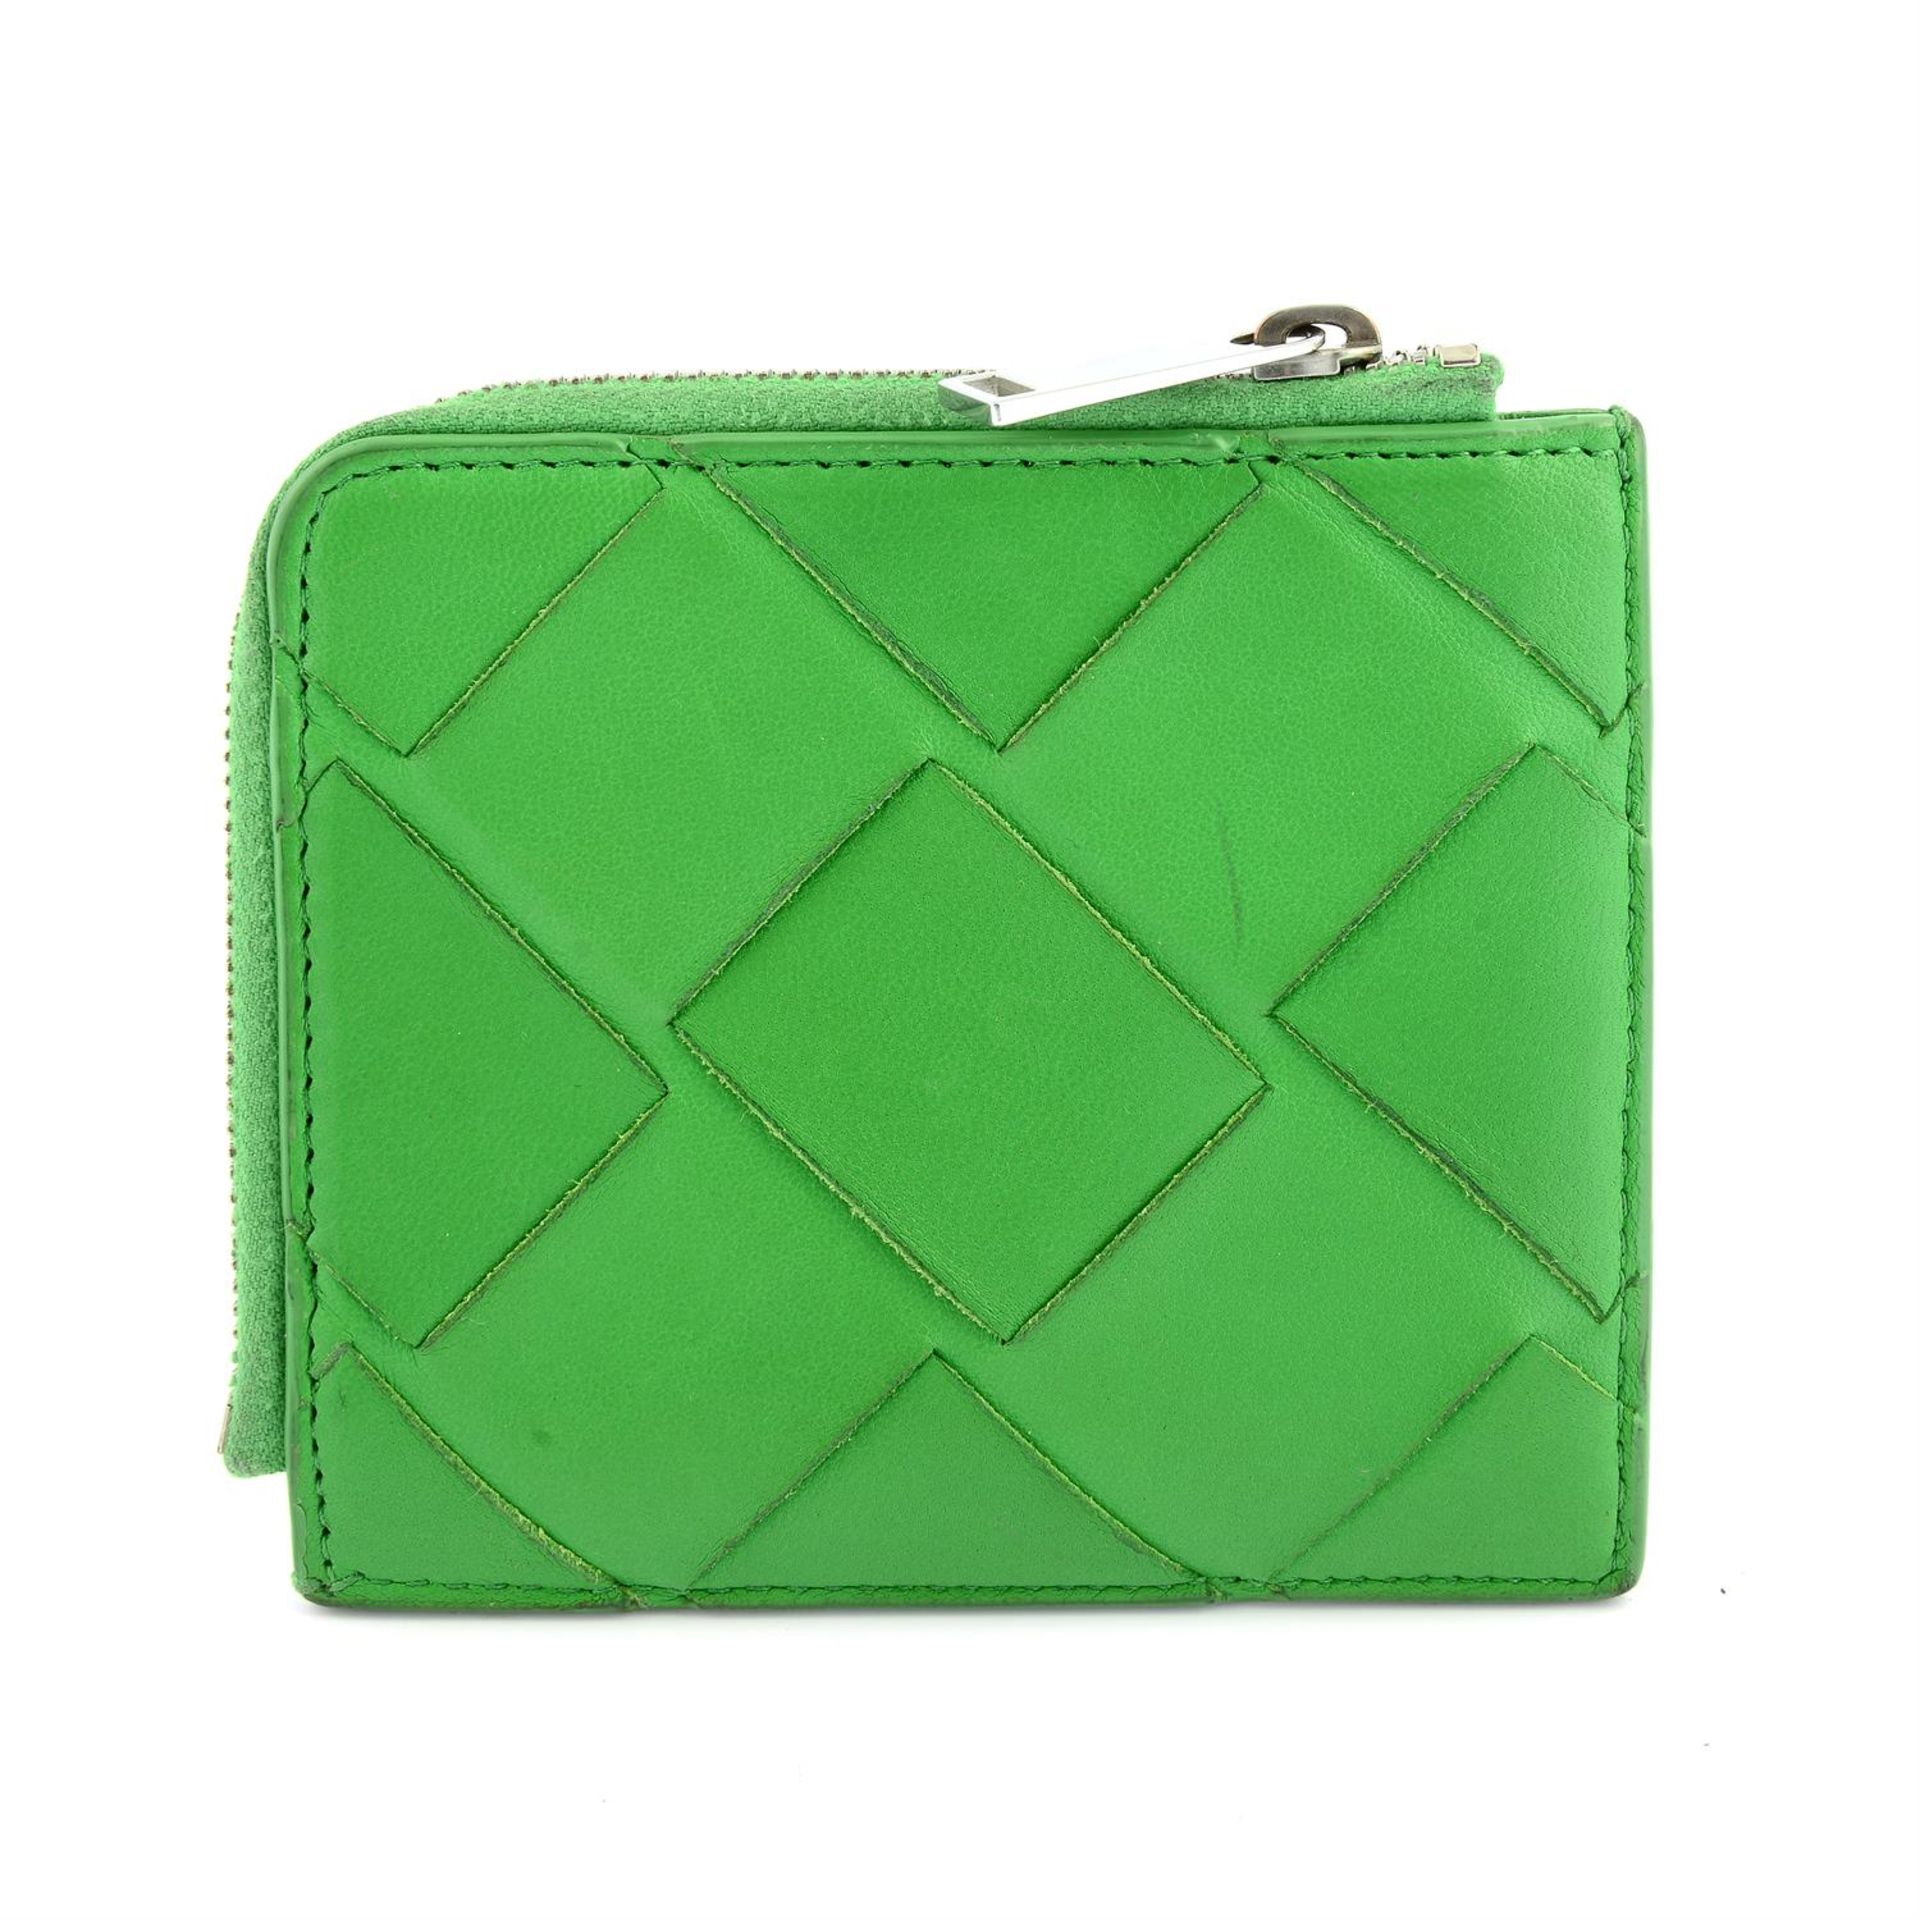 BOTTEGA VENETA - a small green Intrecciato leather coin purse. - Image 2 of 4